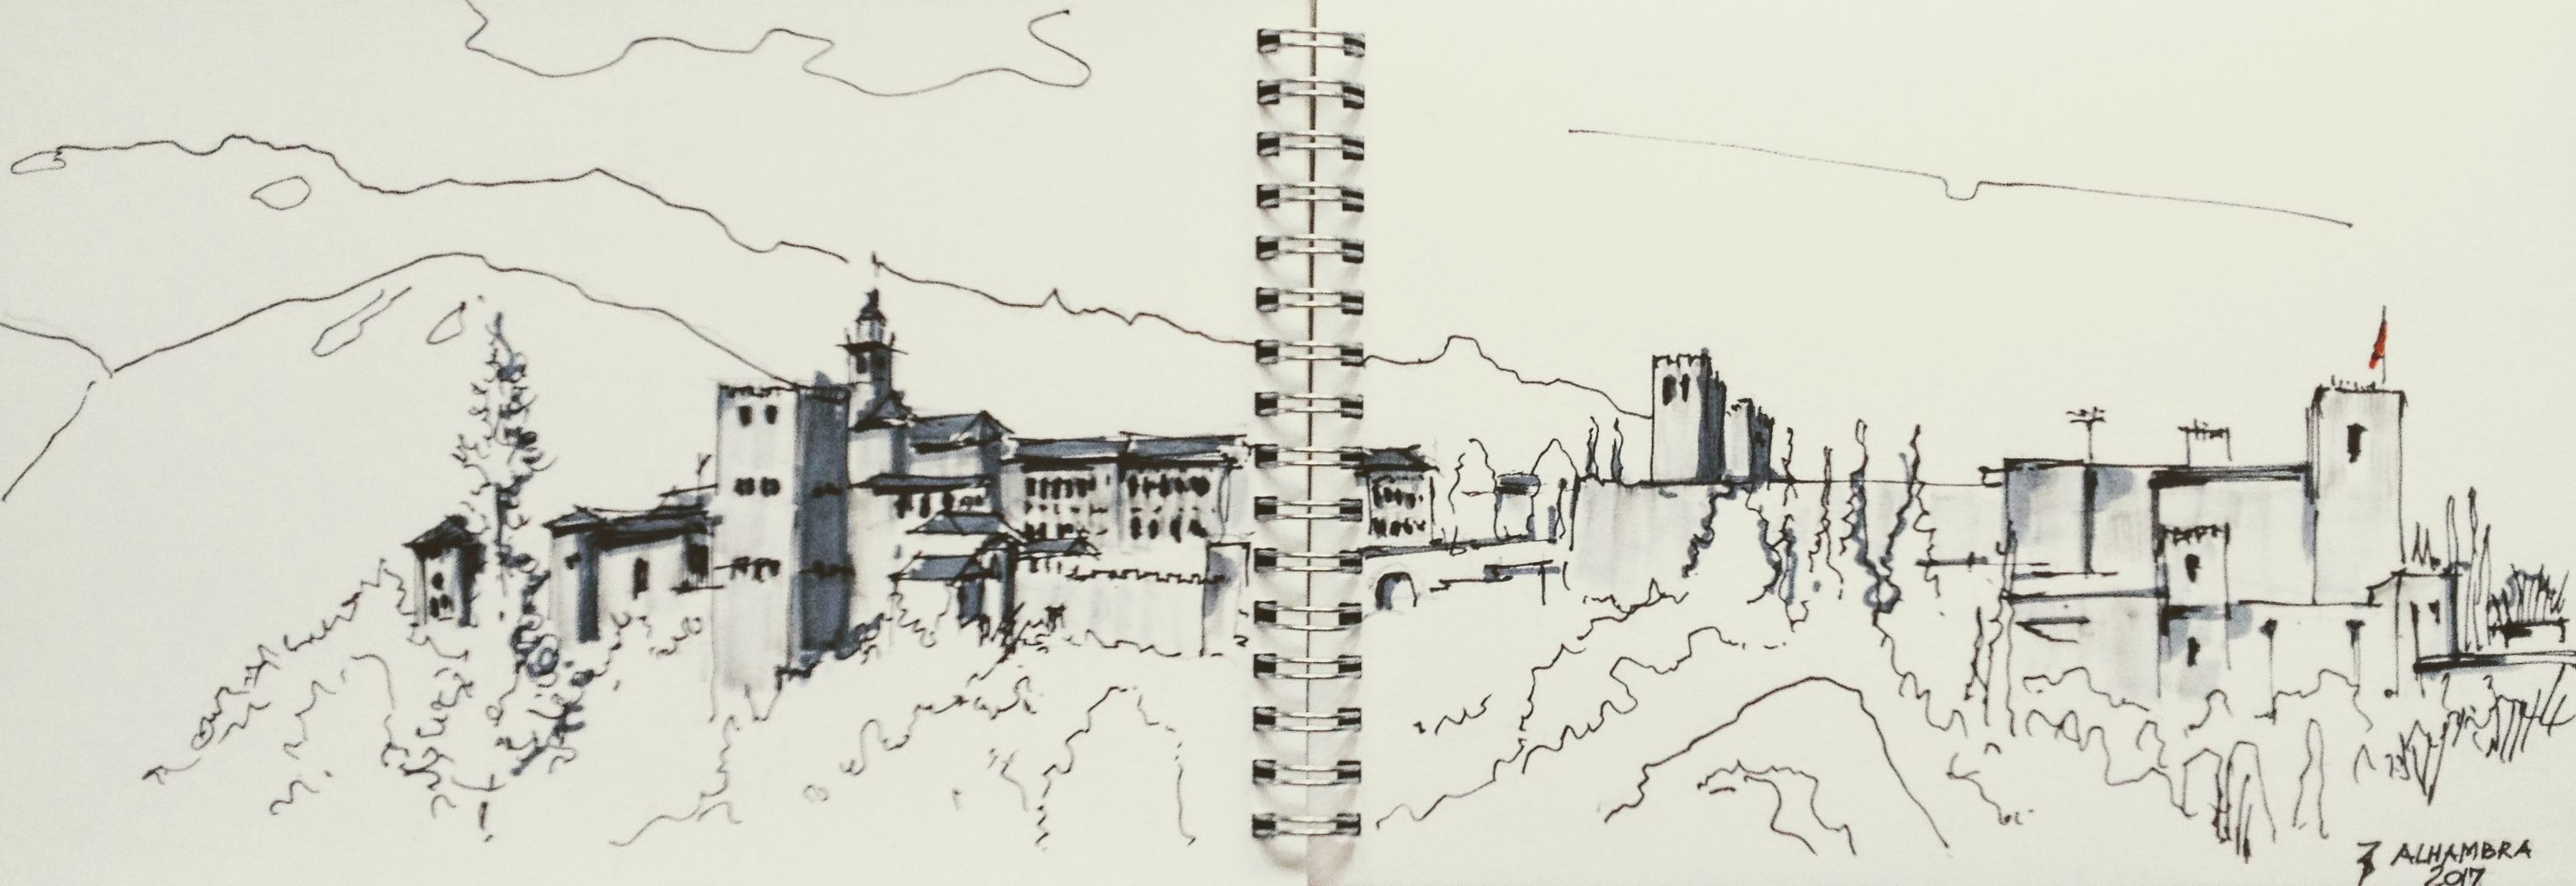 Alhambra sketch